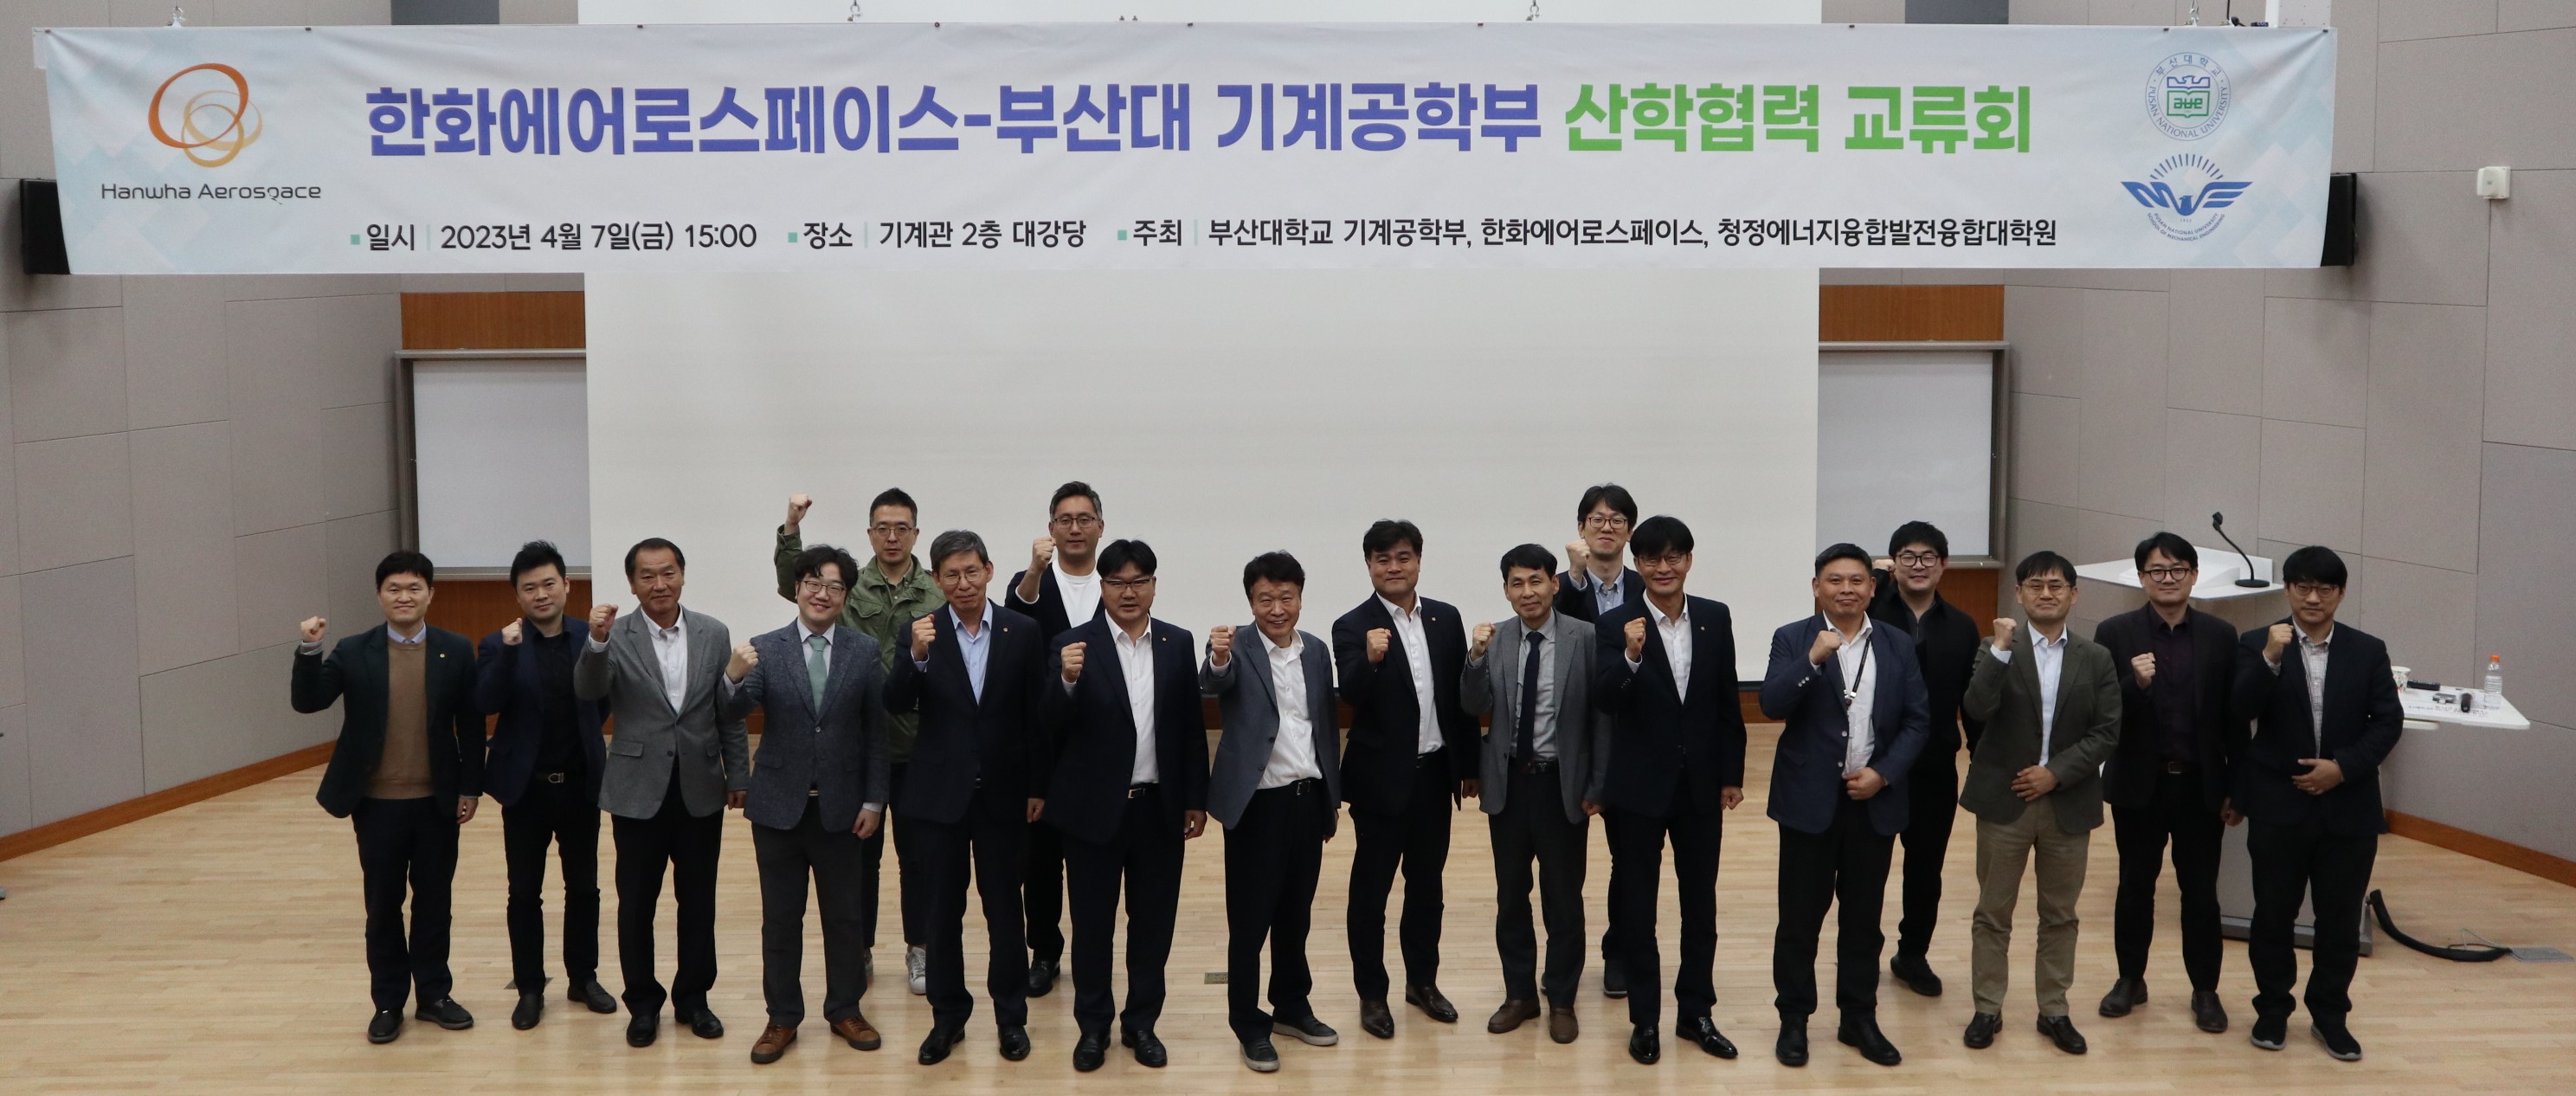 산학협력 기술교류회 개최 한화-단체.JPG